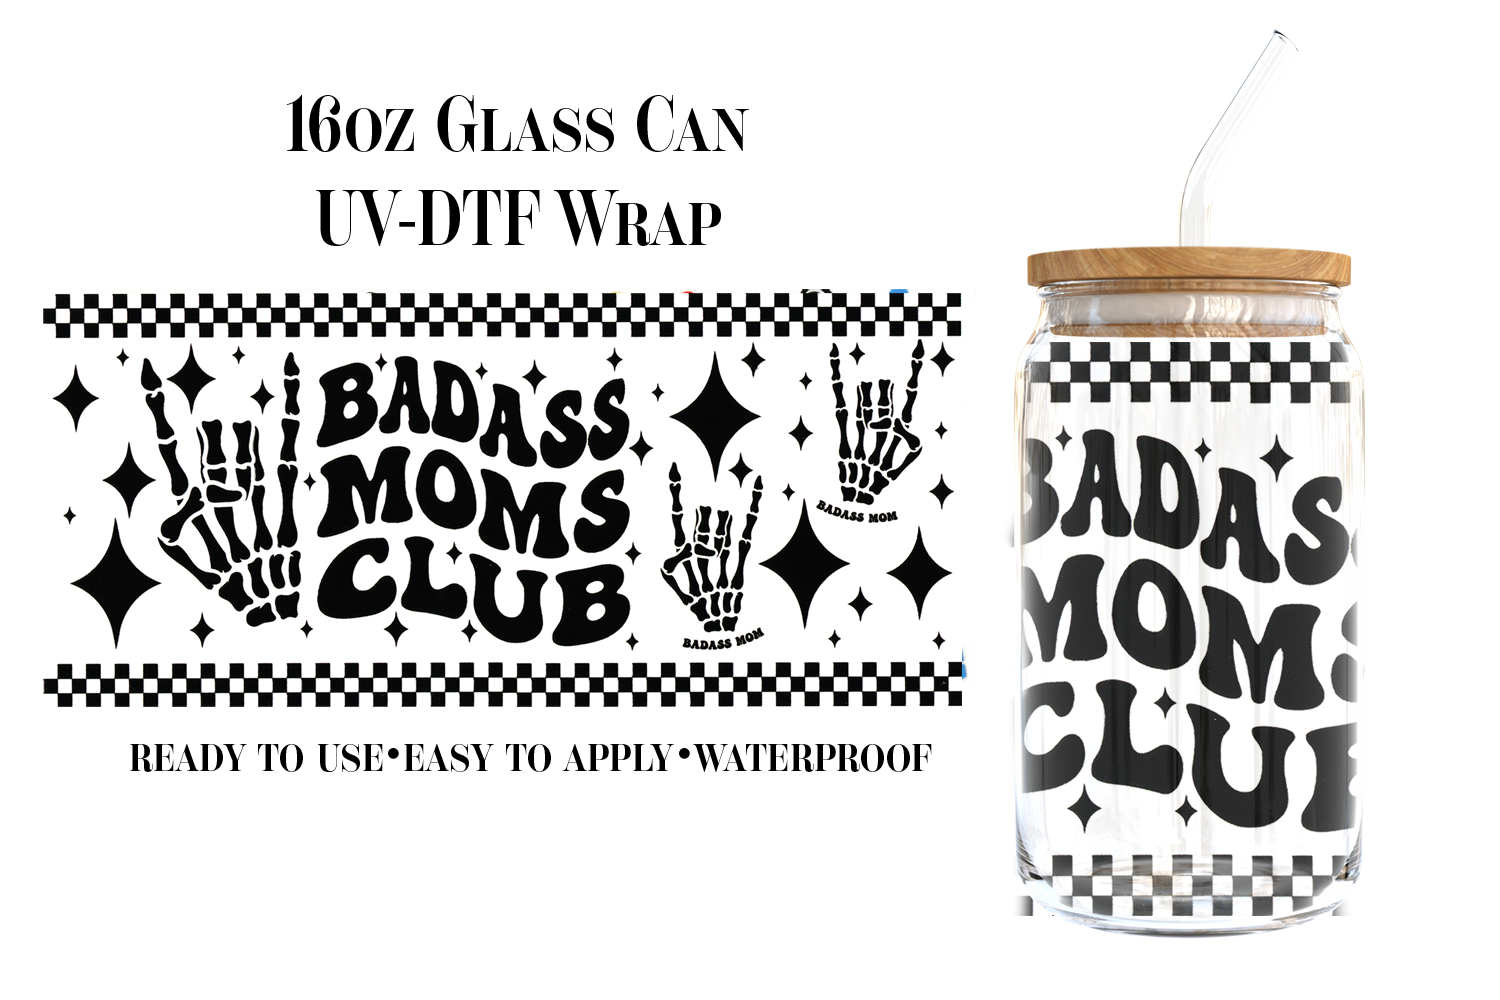 #11) Badass Moms Club UVDTF 16oz Wrap